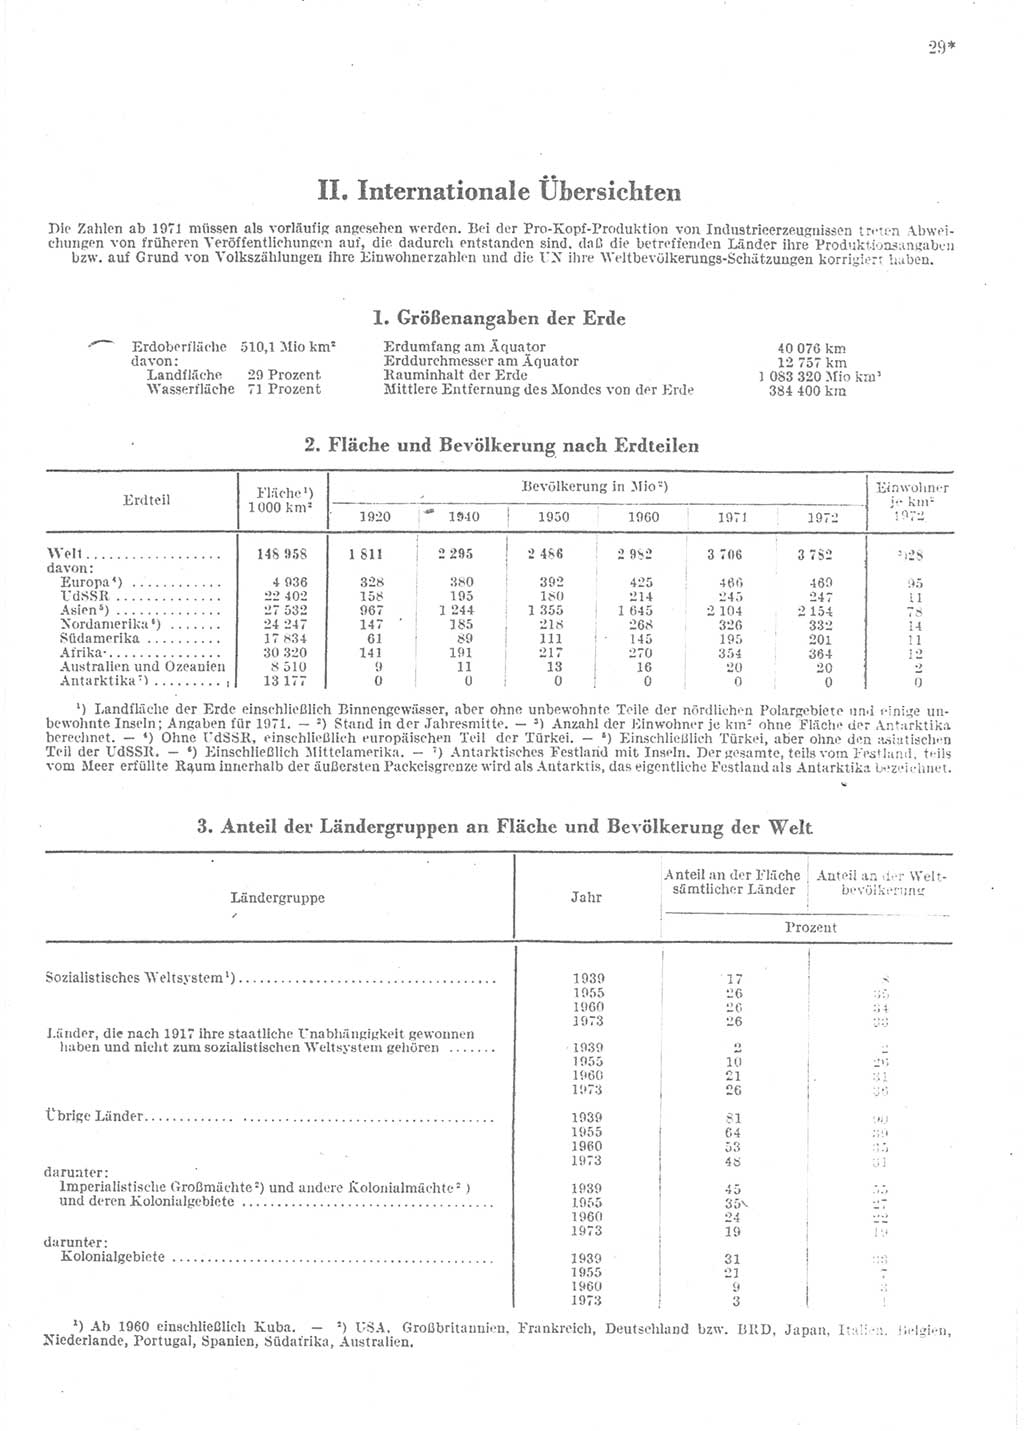 Statistisches Jahrbuch der Deutschen Demokratischen Republik (DDR) 1974, Seite 29 (Stat. Jb. DDR 1974, S. 29)